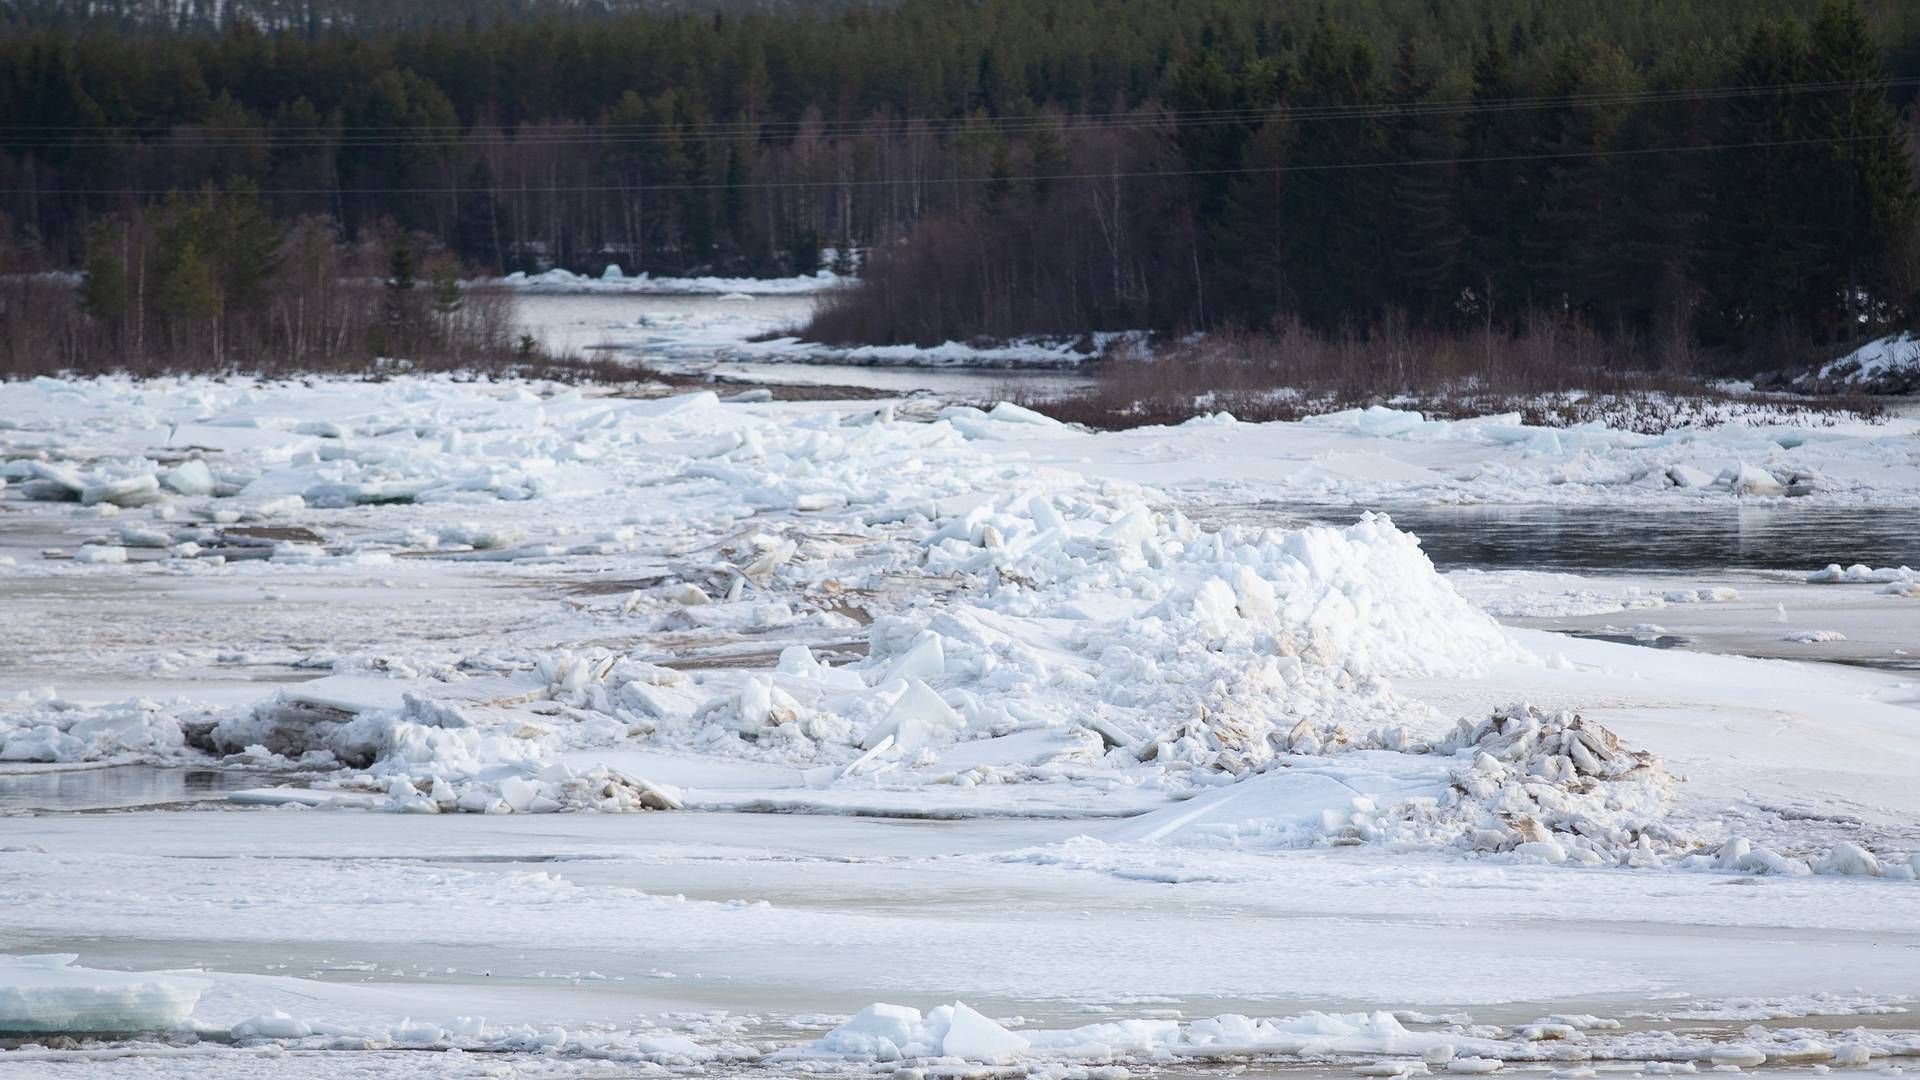 VENTER FLOM: Store is- og vannmasser i Glomma nord for Hanestad i Rendalen søndag. Det er ventet flom i området under snøsmeltingen i år. | Foto: Fredrik Hagen / NTB